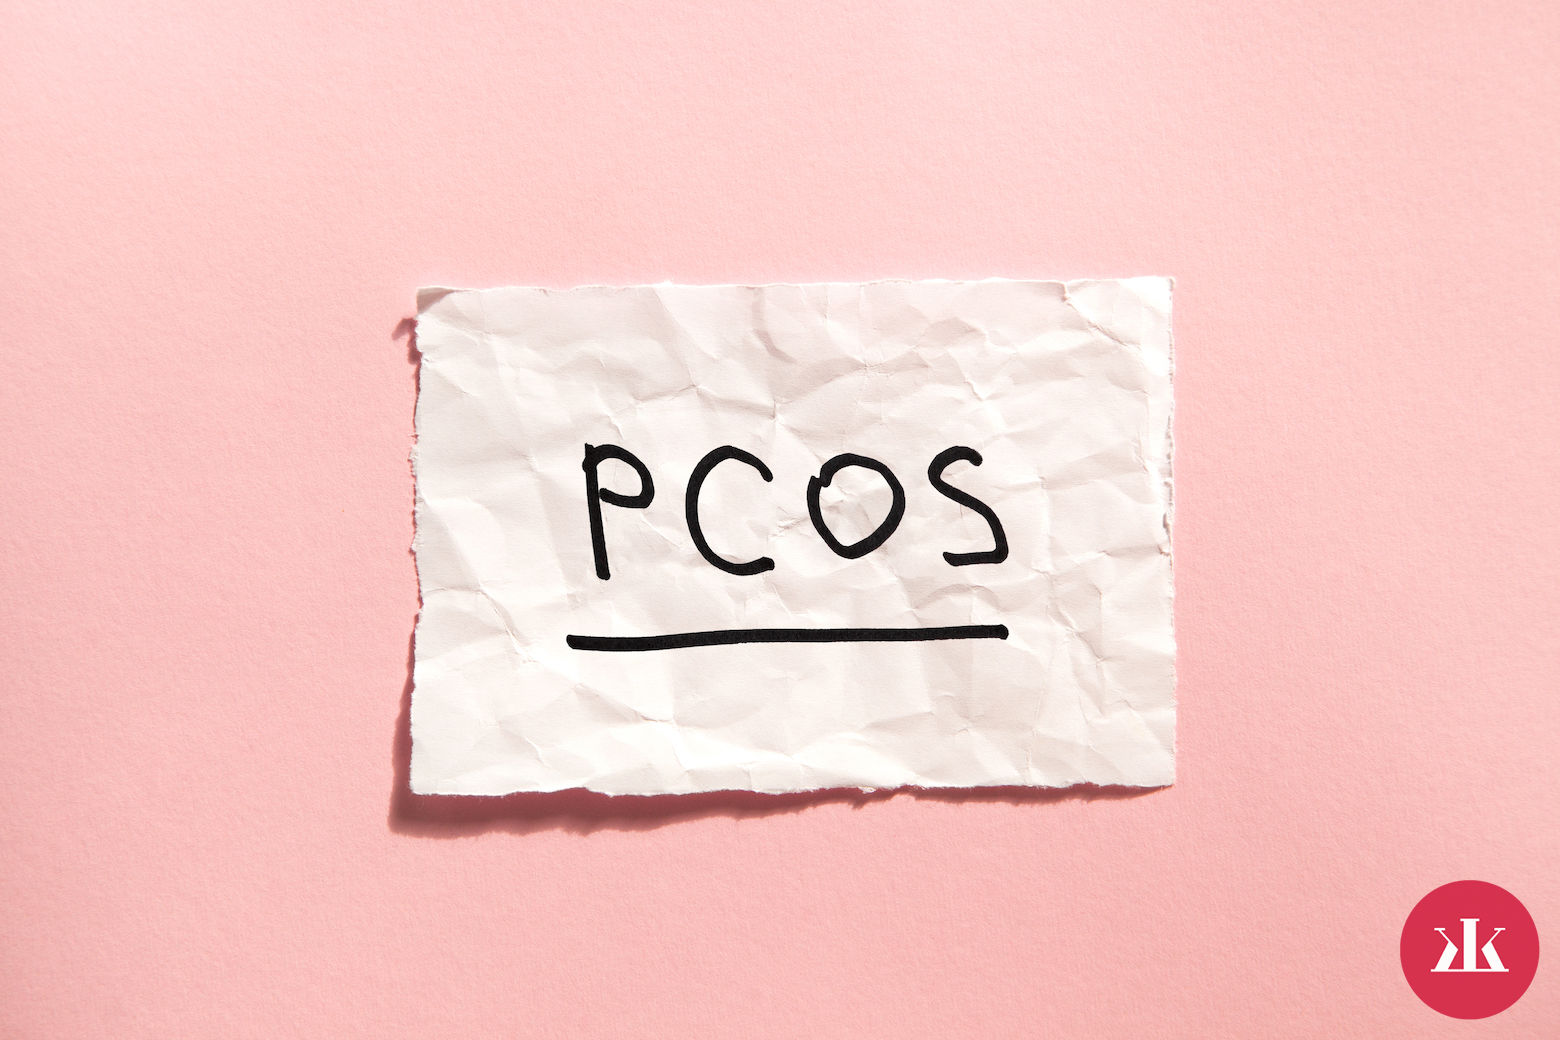 čo je PCOS